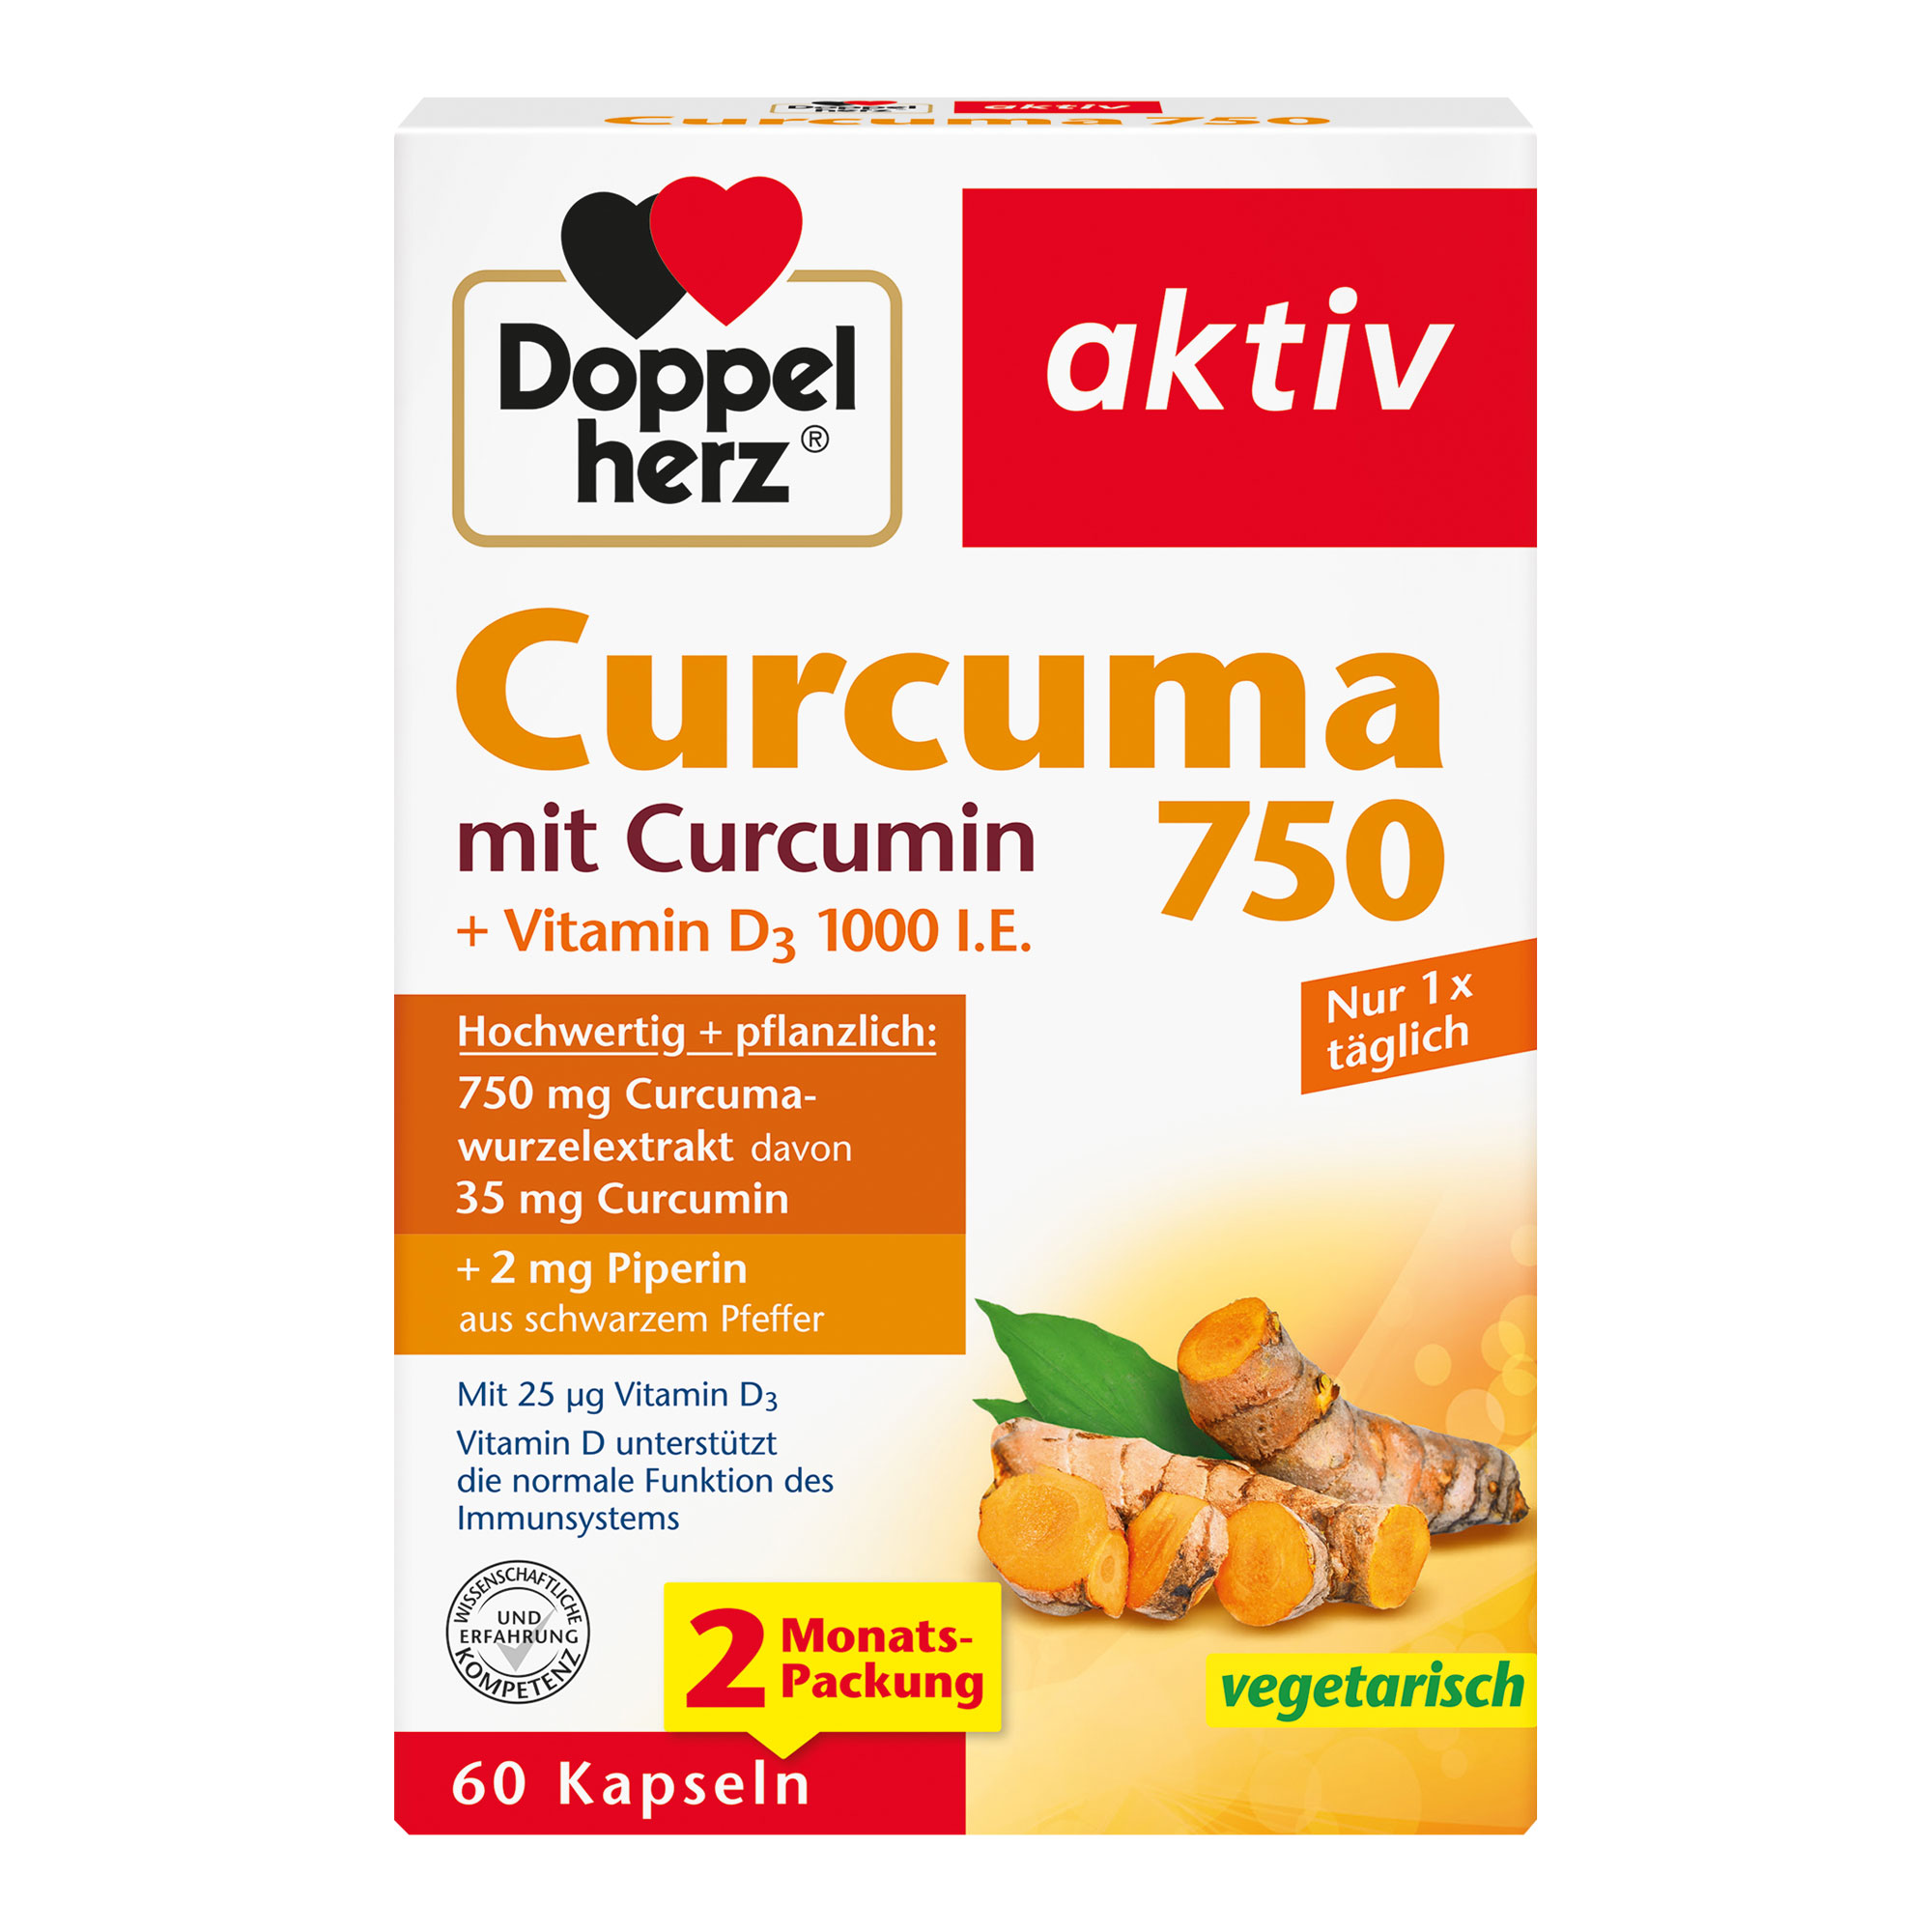 Nahrungsergänzungsmittel mit curcuminhaltigem Curcumawurzelextrakt, Piperin und Vitamin D.